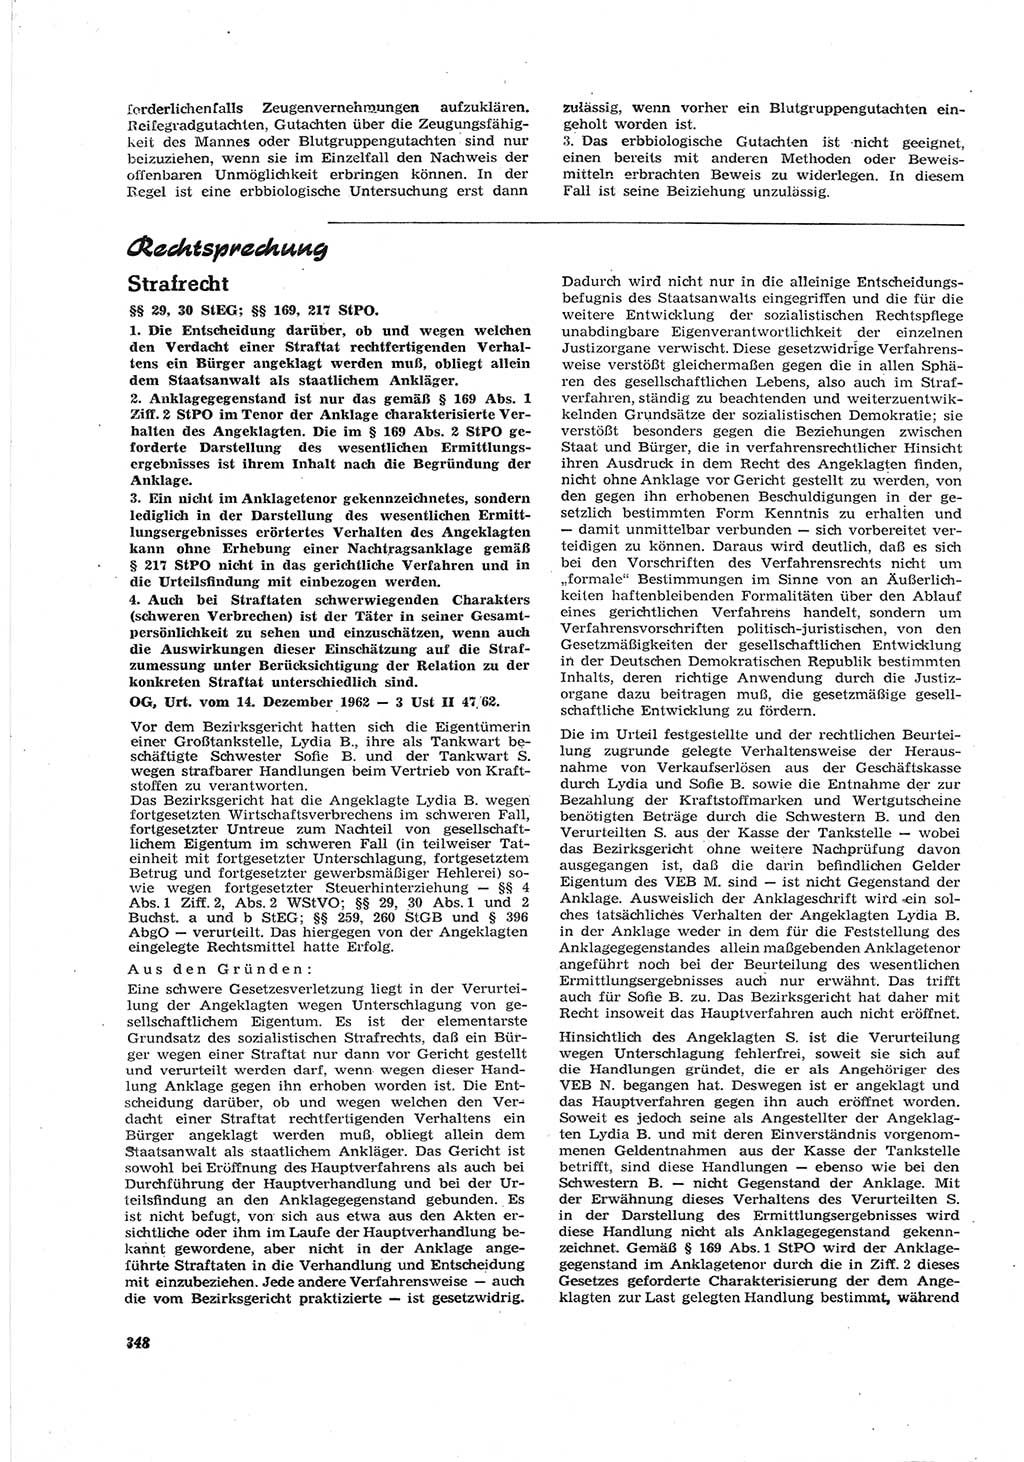 Neue Justiz (NJ), Zeitschrift für Recht und Rechtswissenschaft [Deutsche Demokratische Republik (DDR)], 17. Jahrgang 1963, Seite 348 (NJ DDR 1963, S. 348)